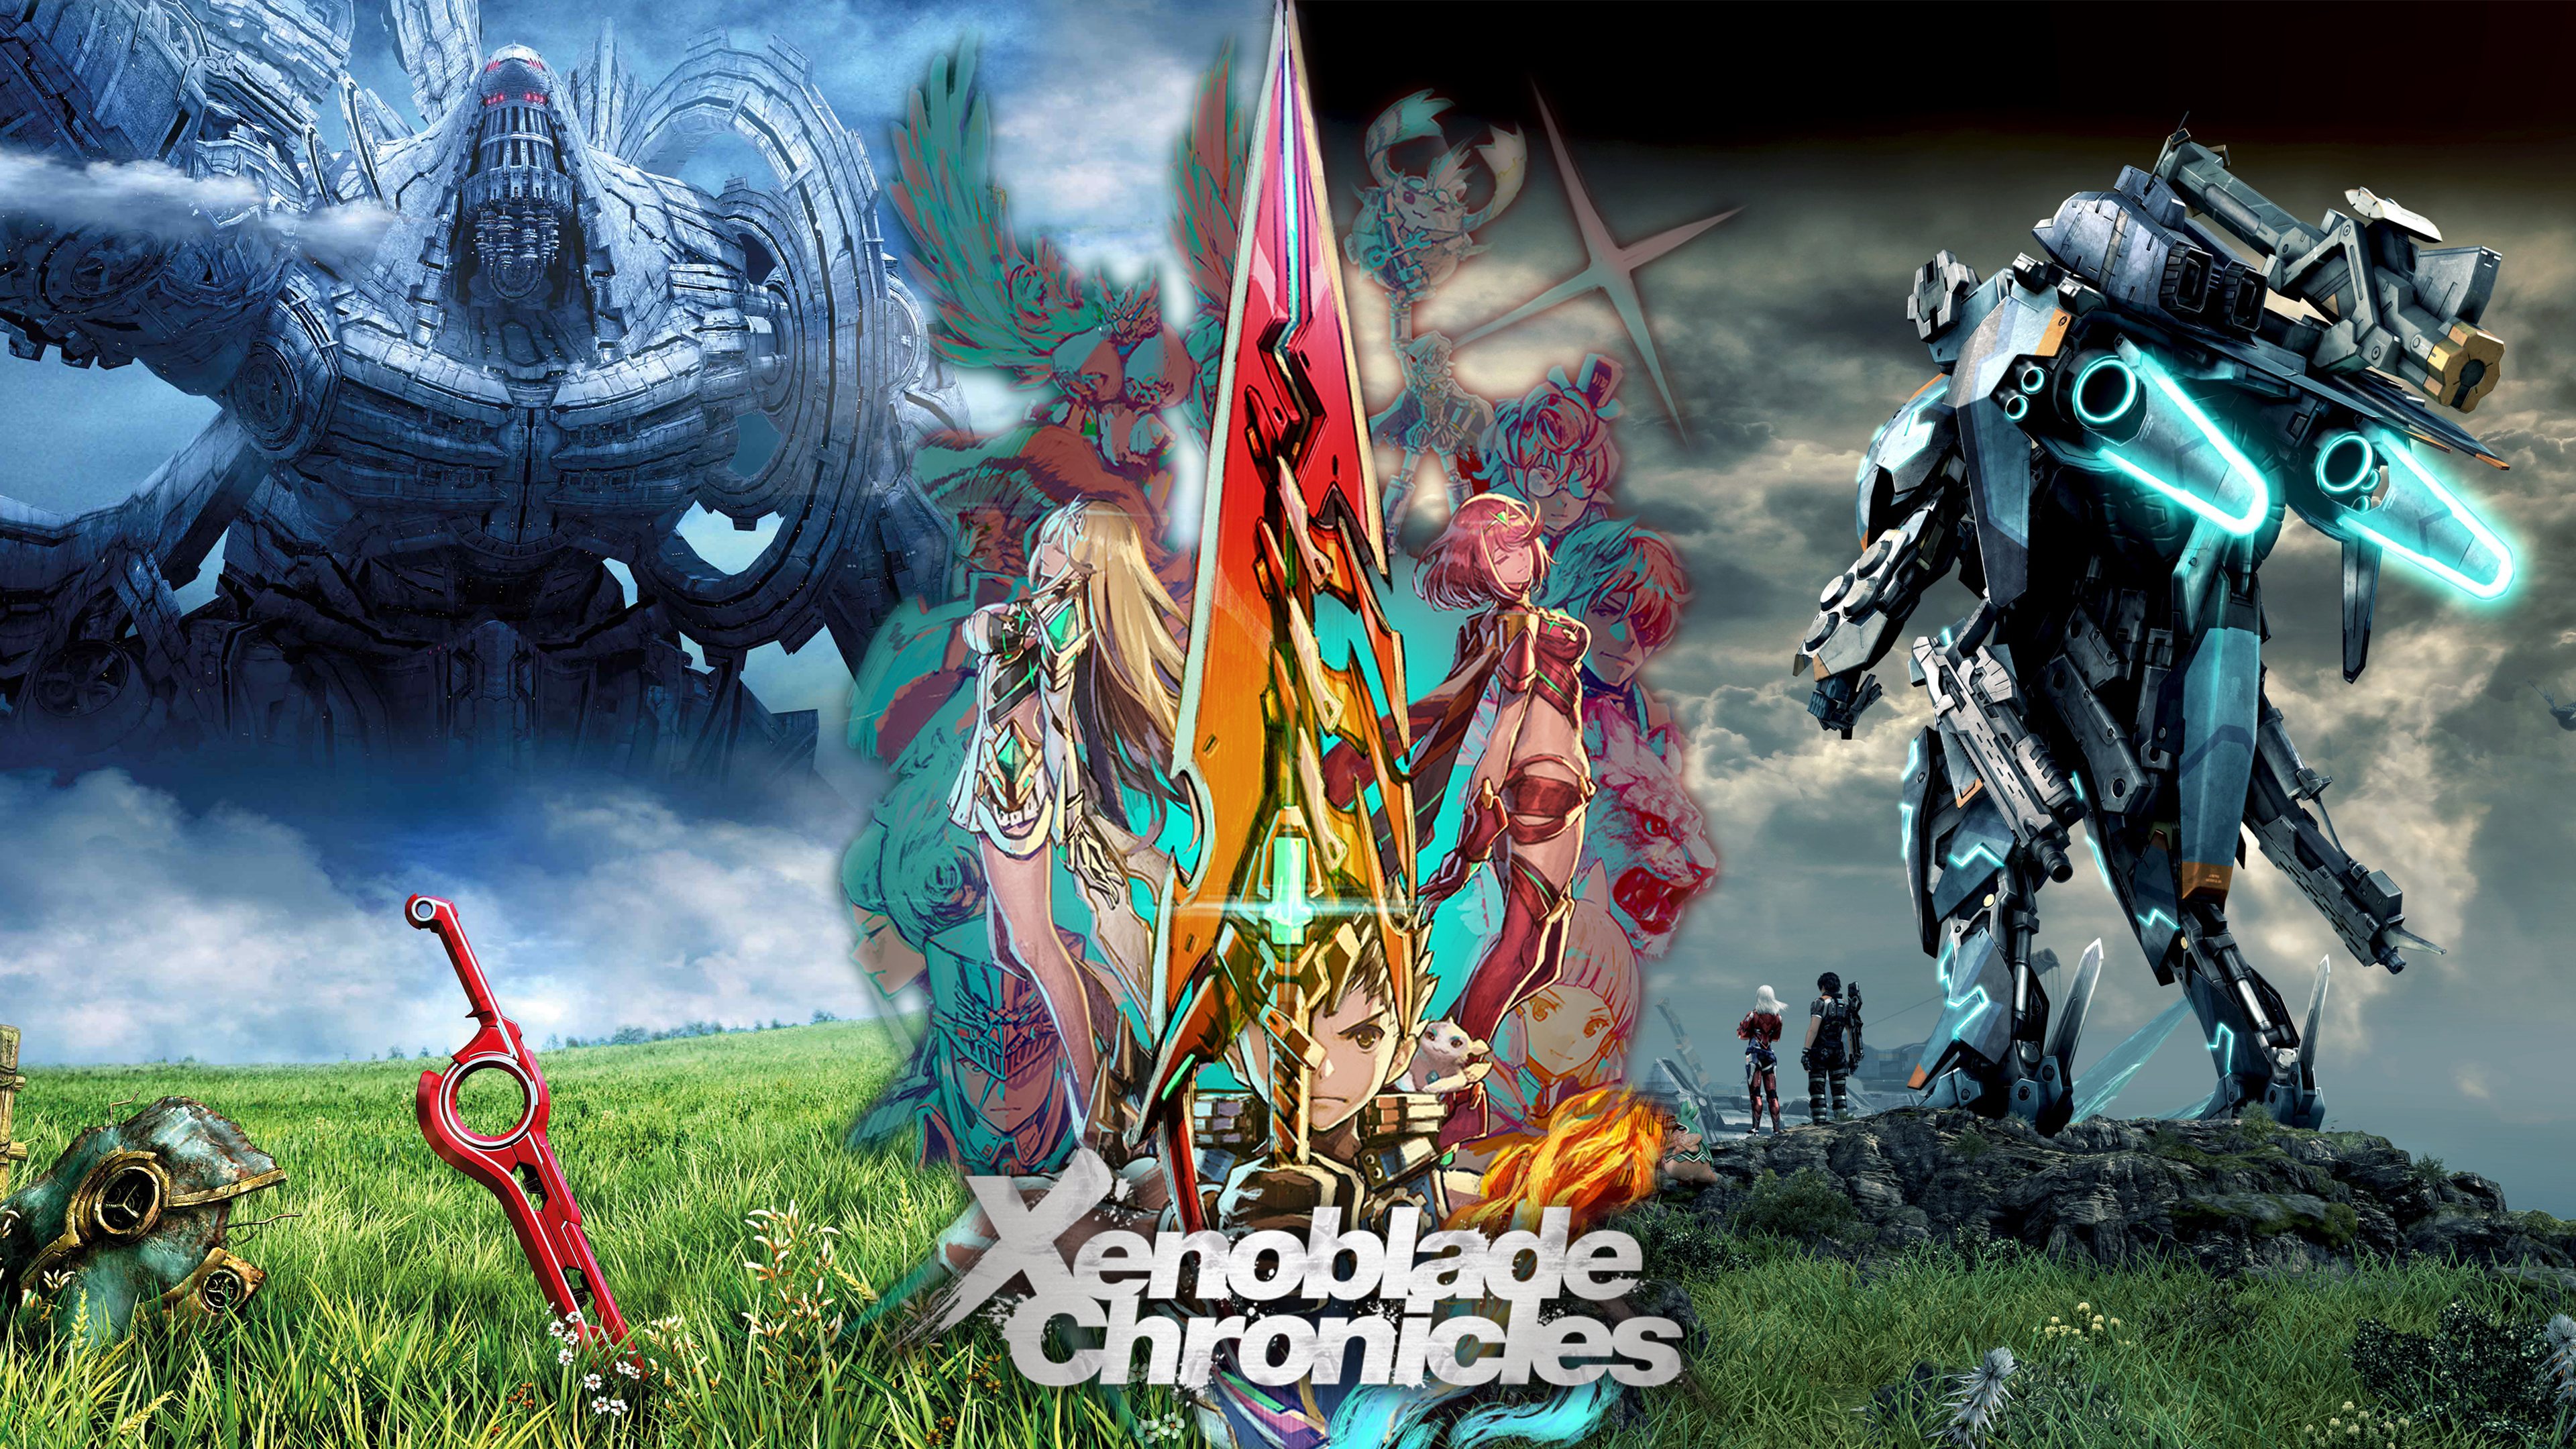 Steam WorkshopXenoblade Chronicles 3 DLC4 Wallpaper